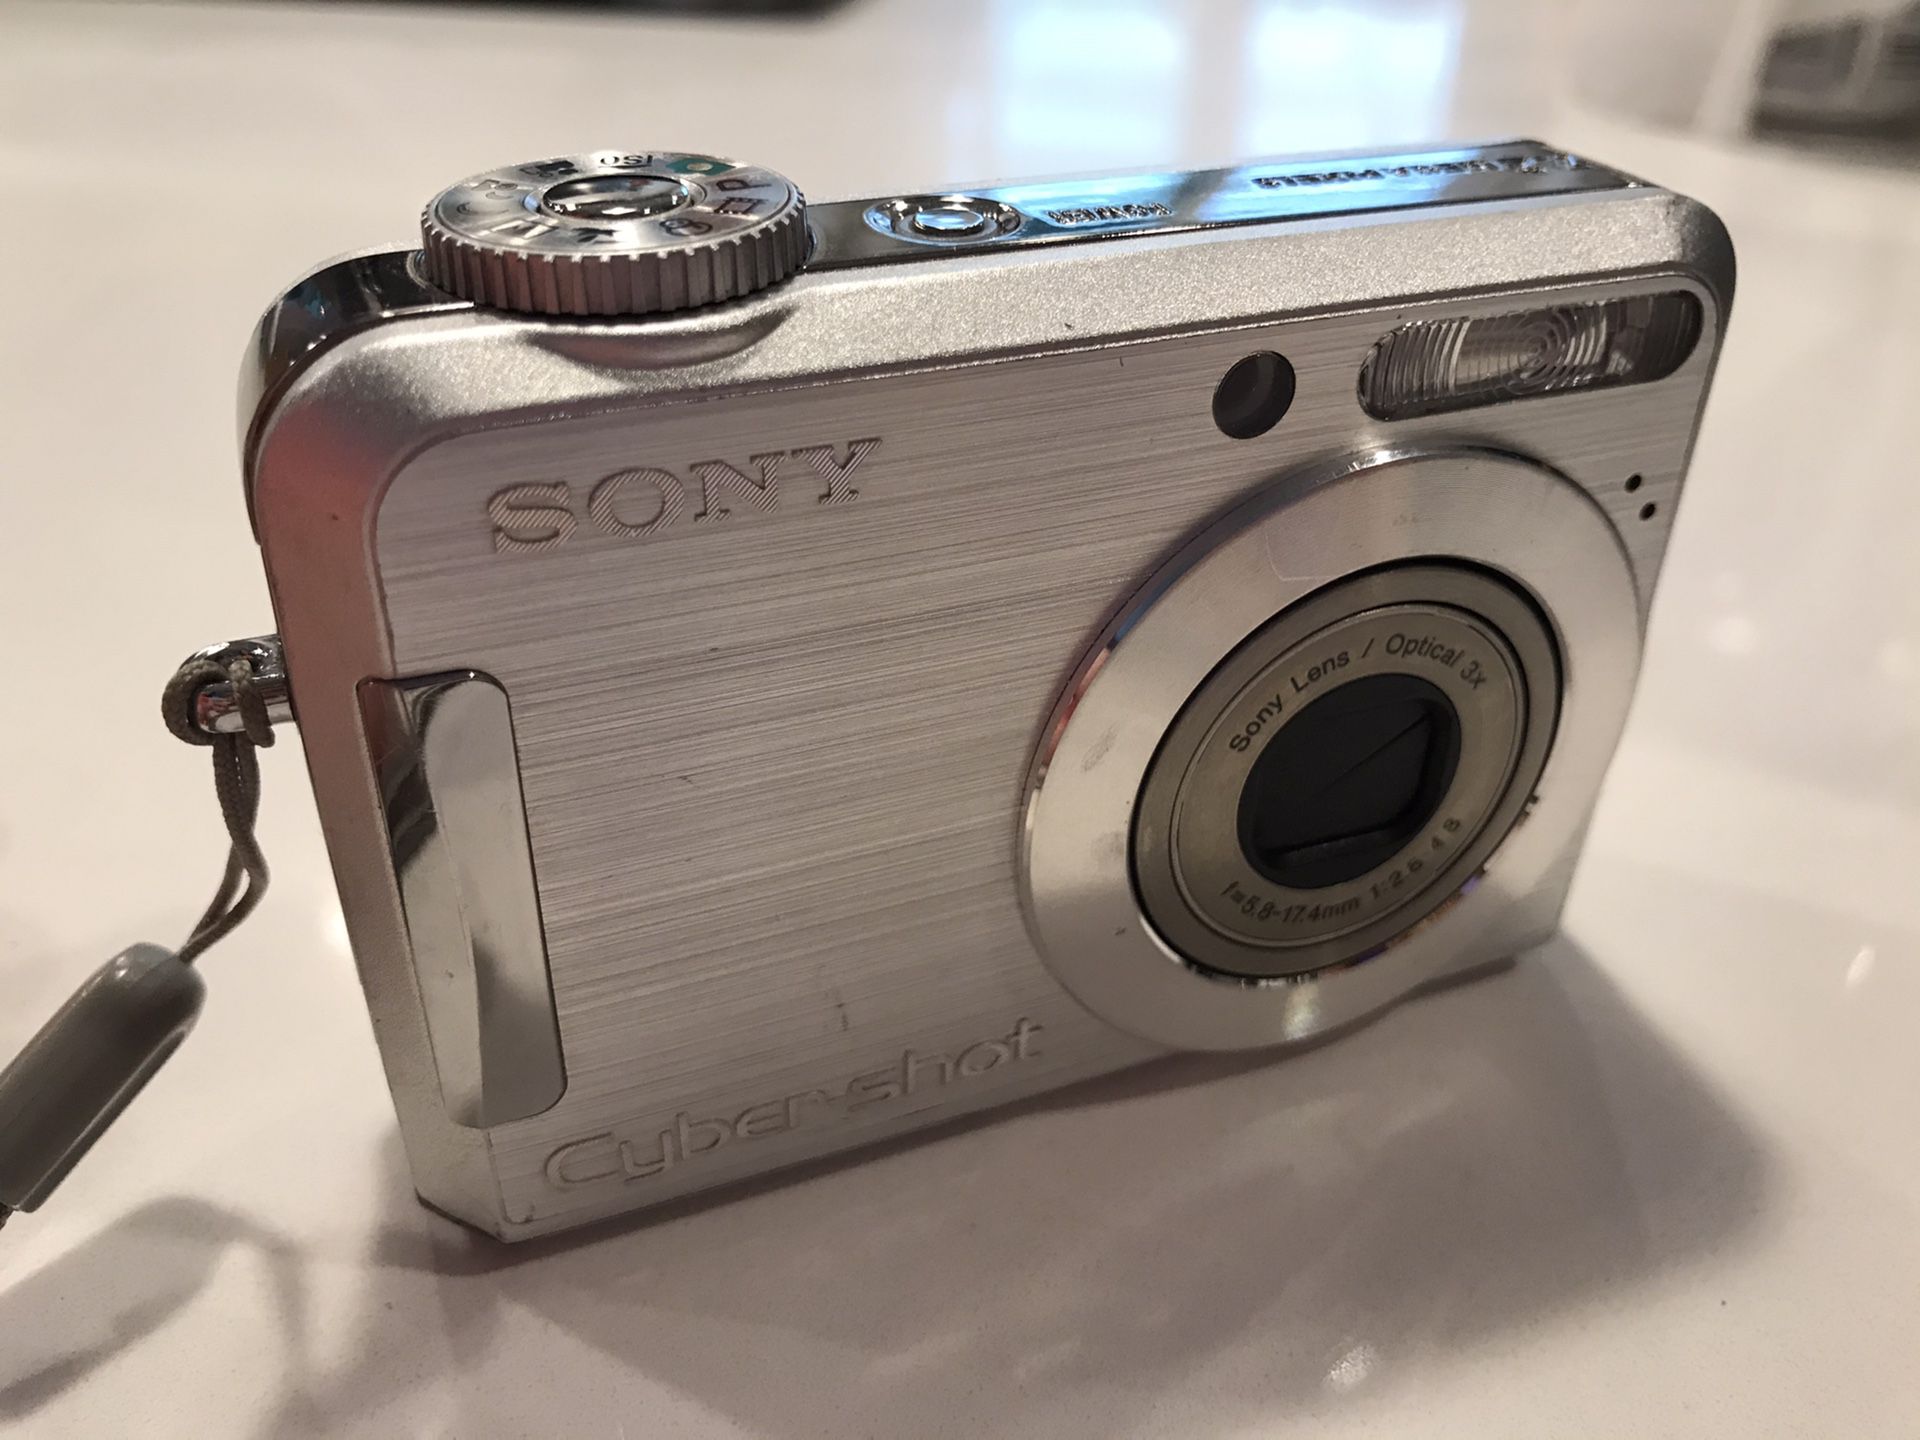 Sony cybershot DSC S700 camera